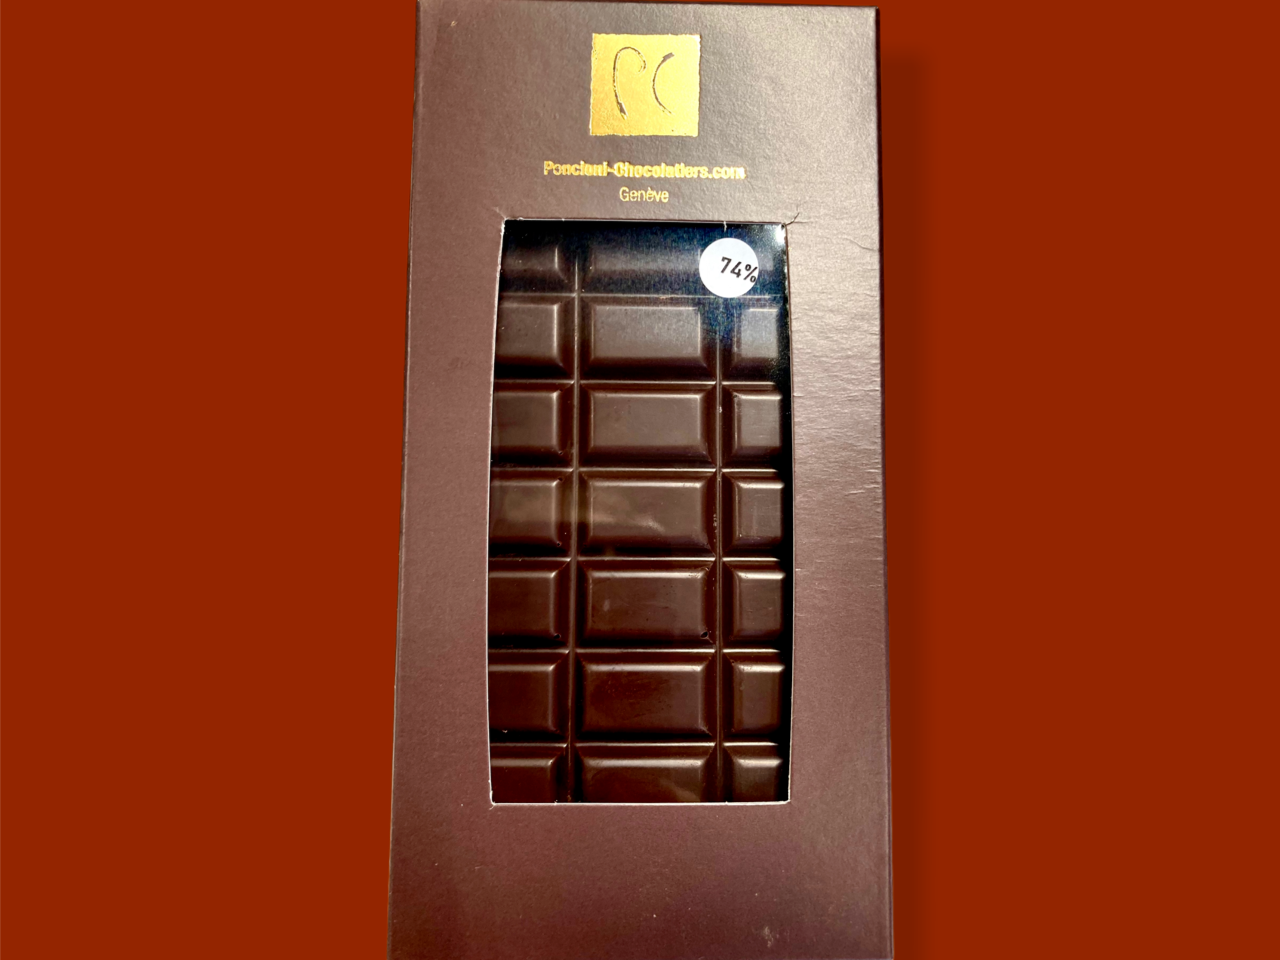 Tablette chocolat grand cru République Dominicaine bio 74% 80g, Pallanterie Chocolatiers, Meinier, image 1 | Mimelis